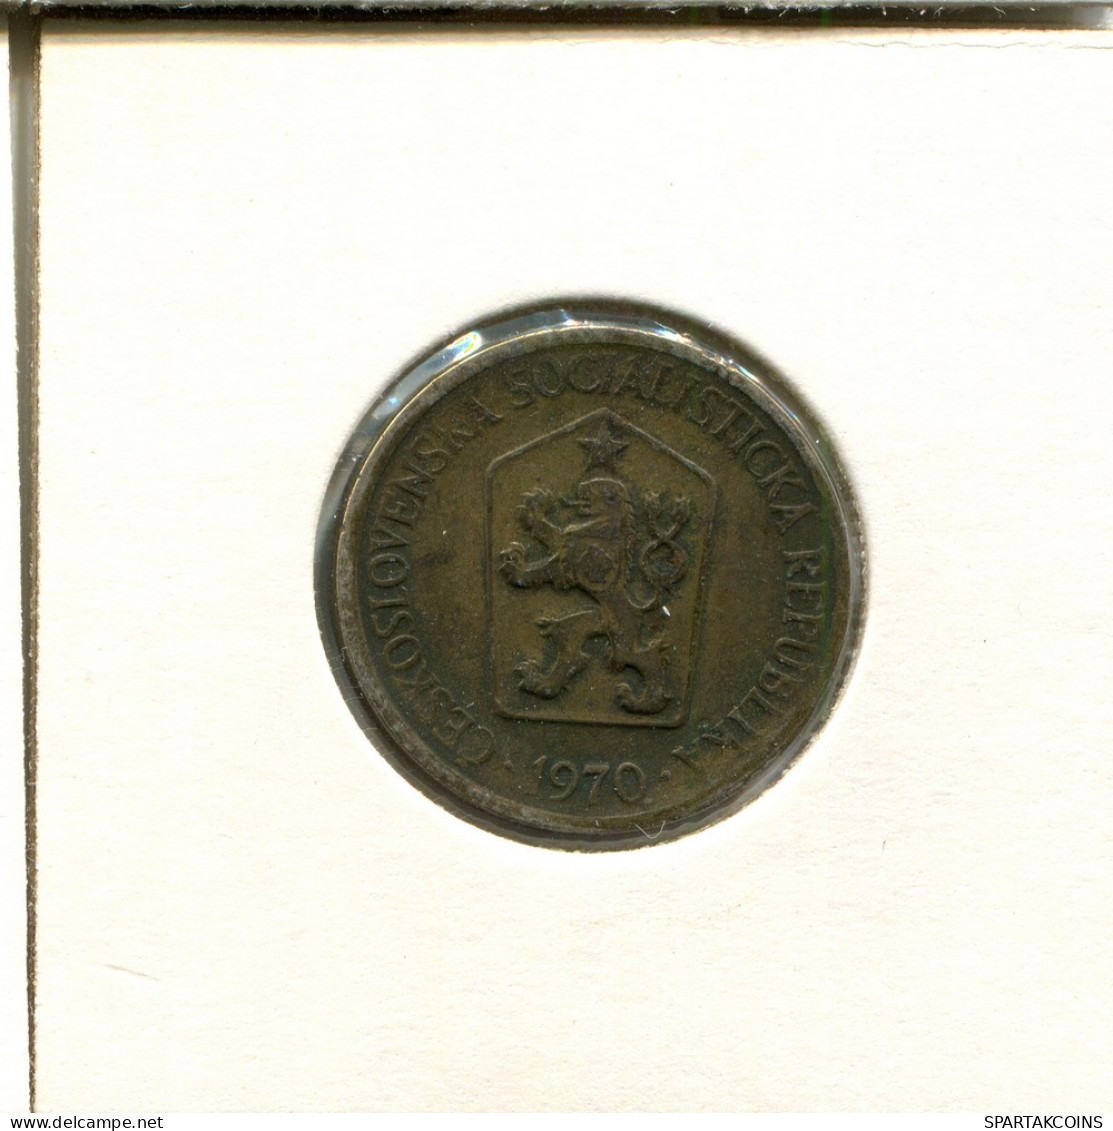 1 KORUNA 1970 CHECOSLOVAQUIA CZECHOESLOVAQUIA SLOVAKIA Moneda #AS965.E.A - Checoslovaquia